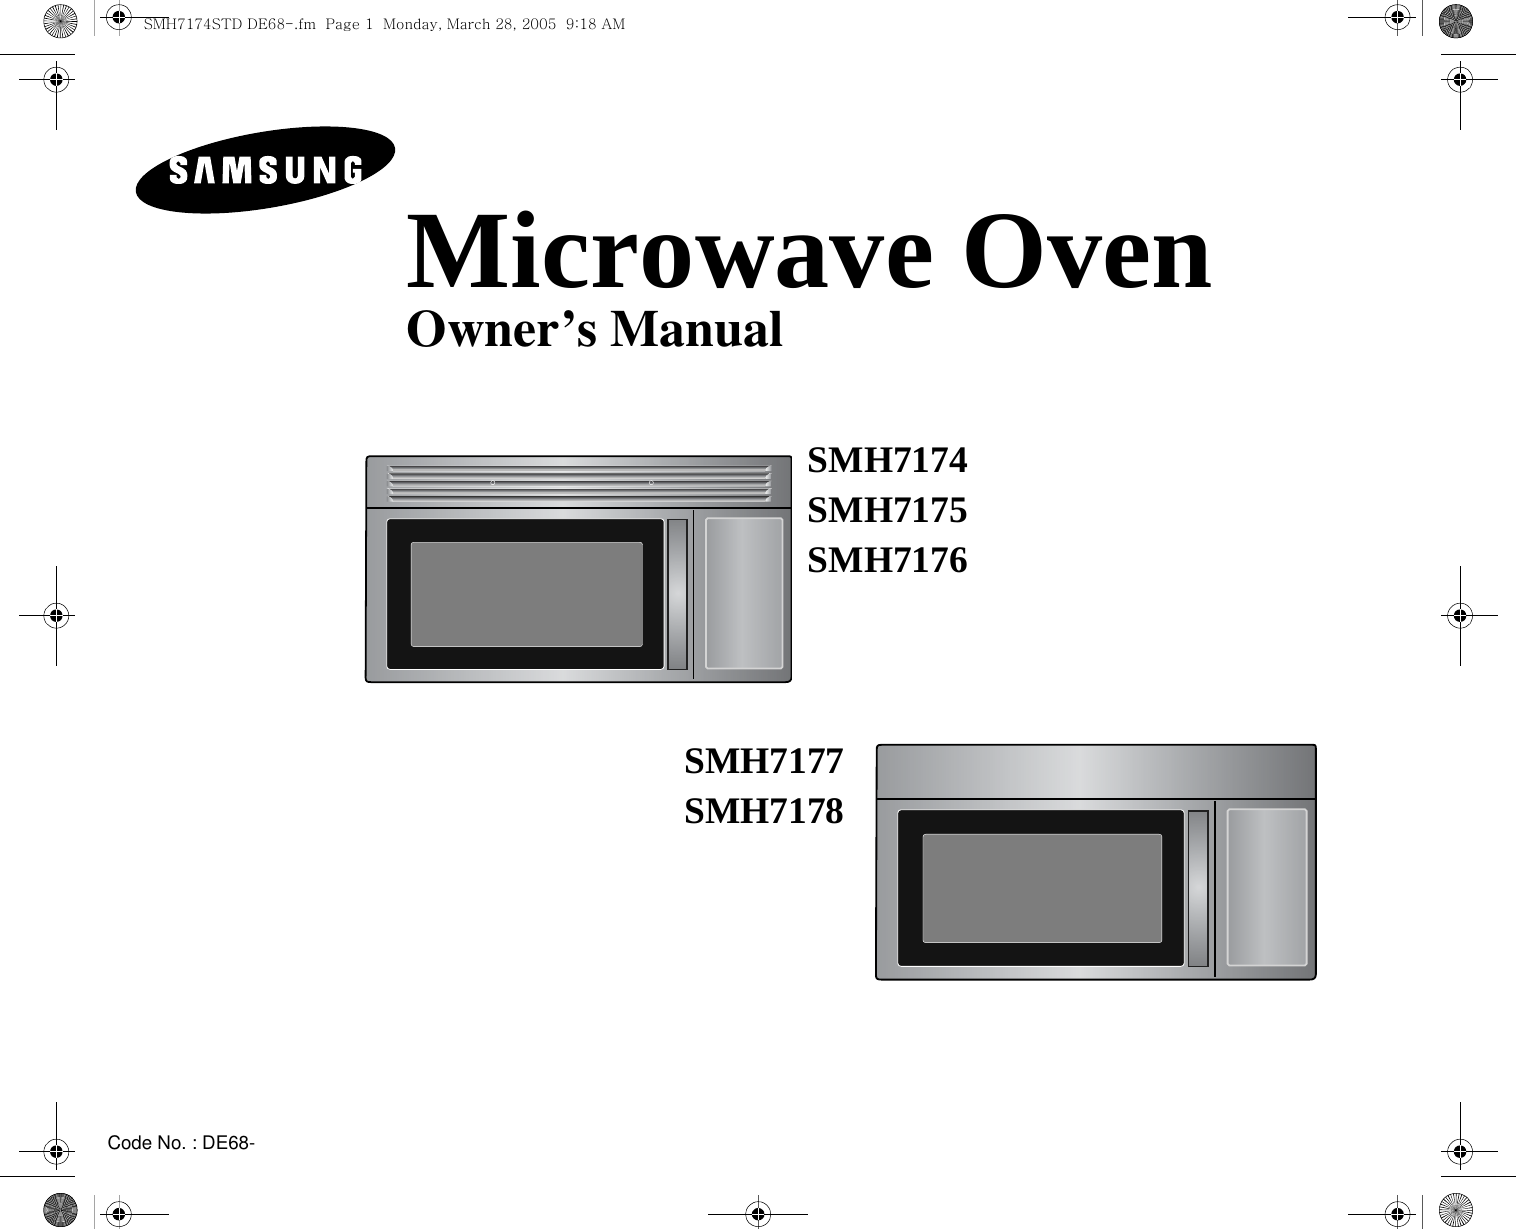 Code No. : DE68-Microwave OvenOwner’s ManualSMH7174SMH7175SMH7176SMH7177SMH7178SMH7174STD DE68-.fm  Page 1  Monday, March 28, 2005  9:18 AM